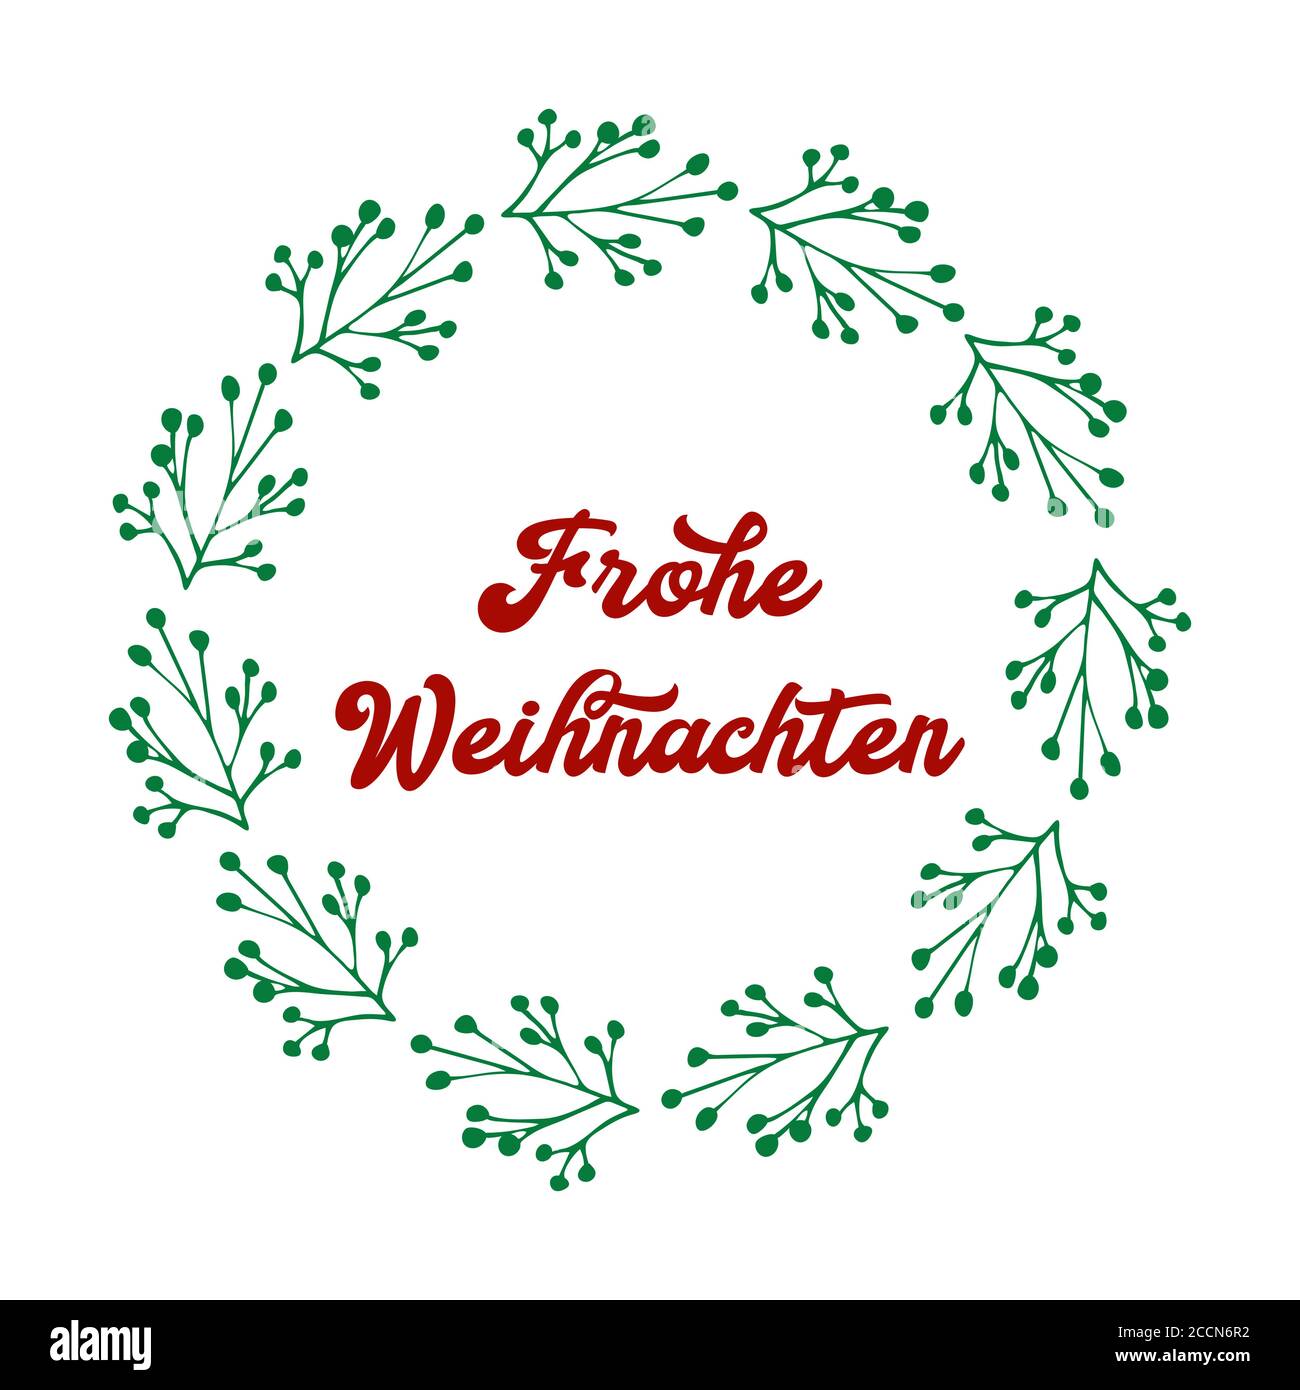 Frohe Weihnachten Zitat In Deutsch Als Logo Oder Header Ubersetzte Frohe Weihnachten Festschrift Fur Plakat Karte Einladung Stock Vektorgrafik Alamy